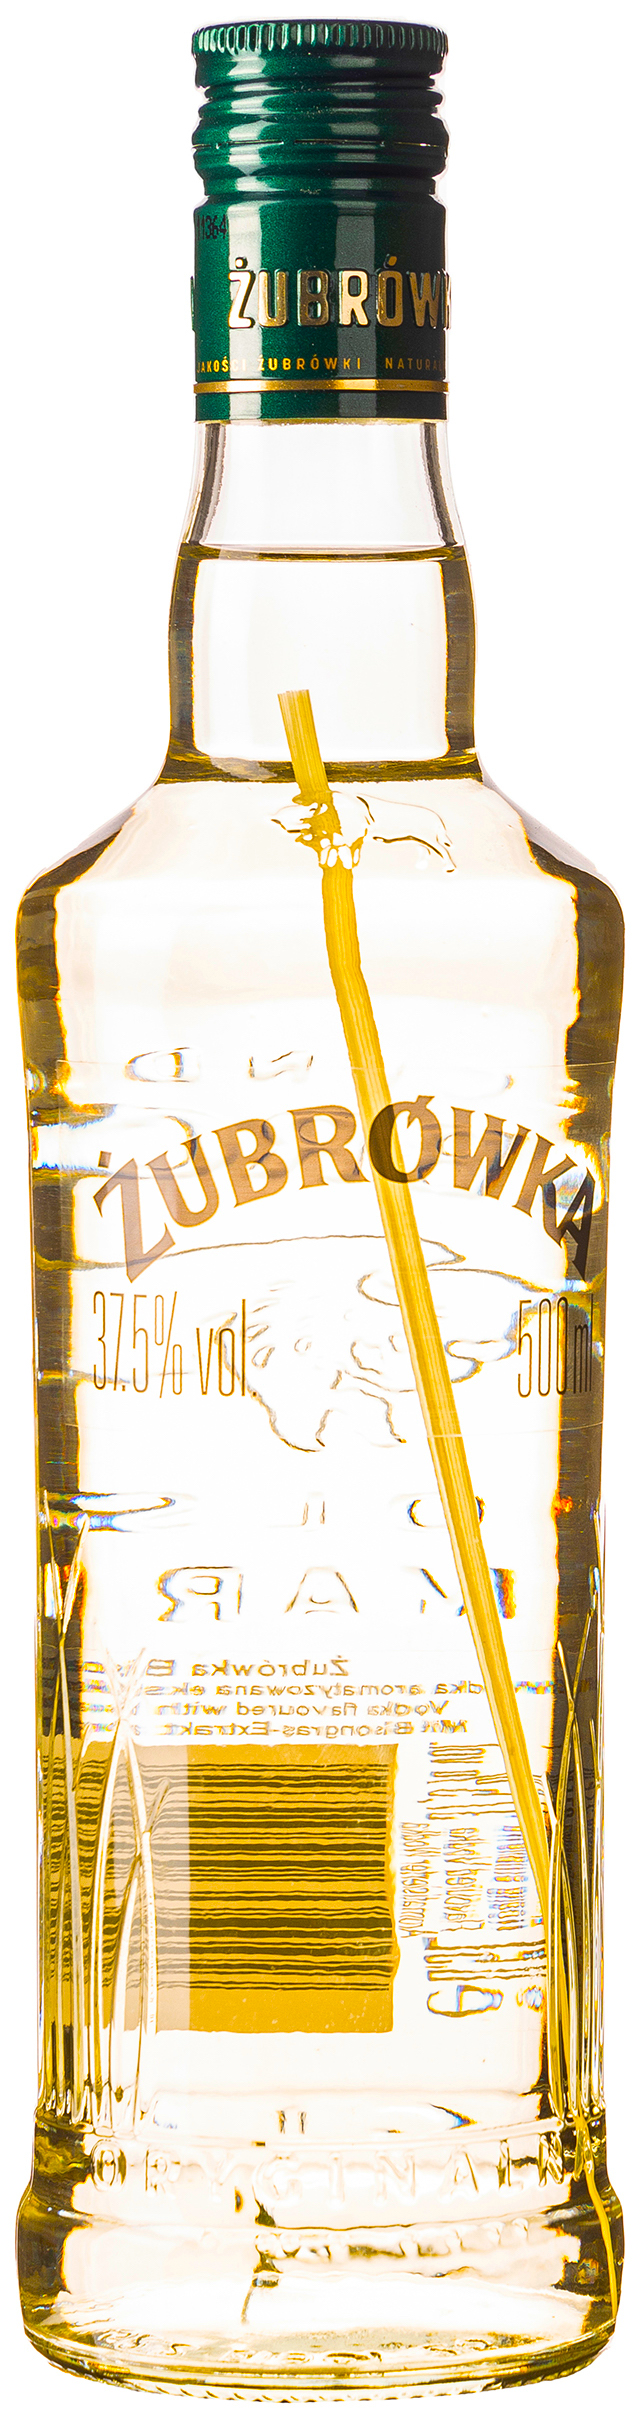 37,5% vol. Zubrowka 0,5L 5900343005272 | Grass Bison Wodka